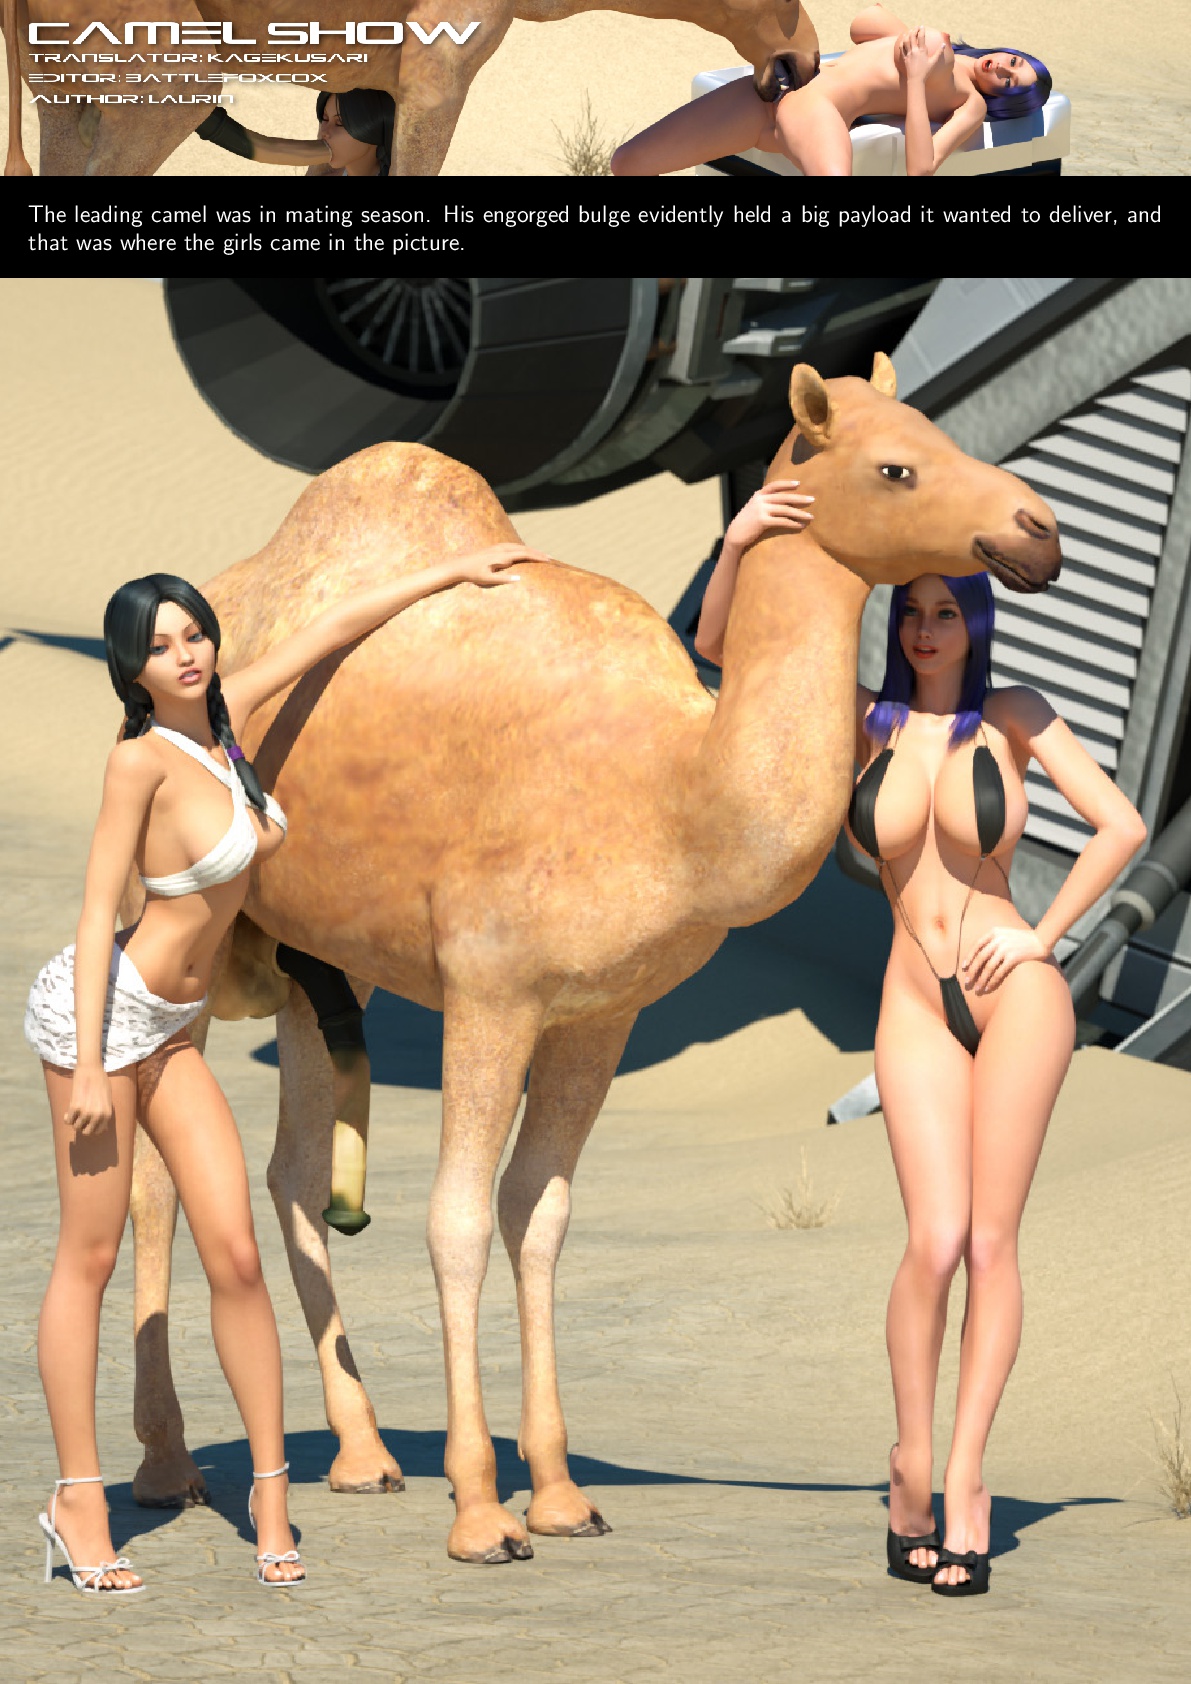 DizzyDills] – Camel Show | Porn Comics